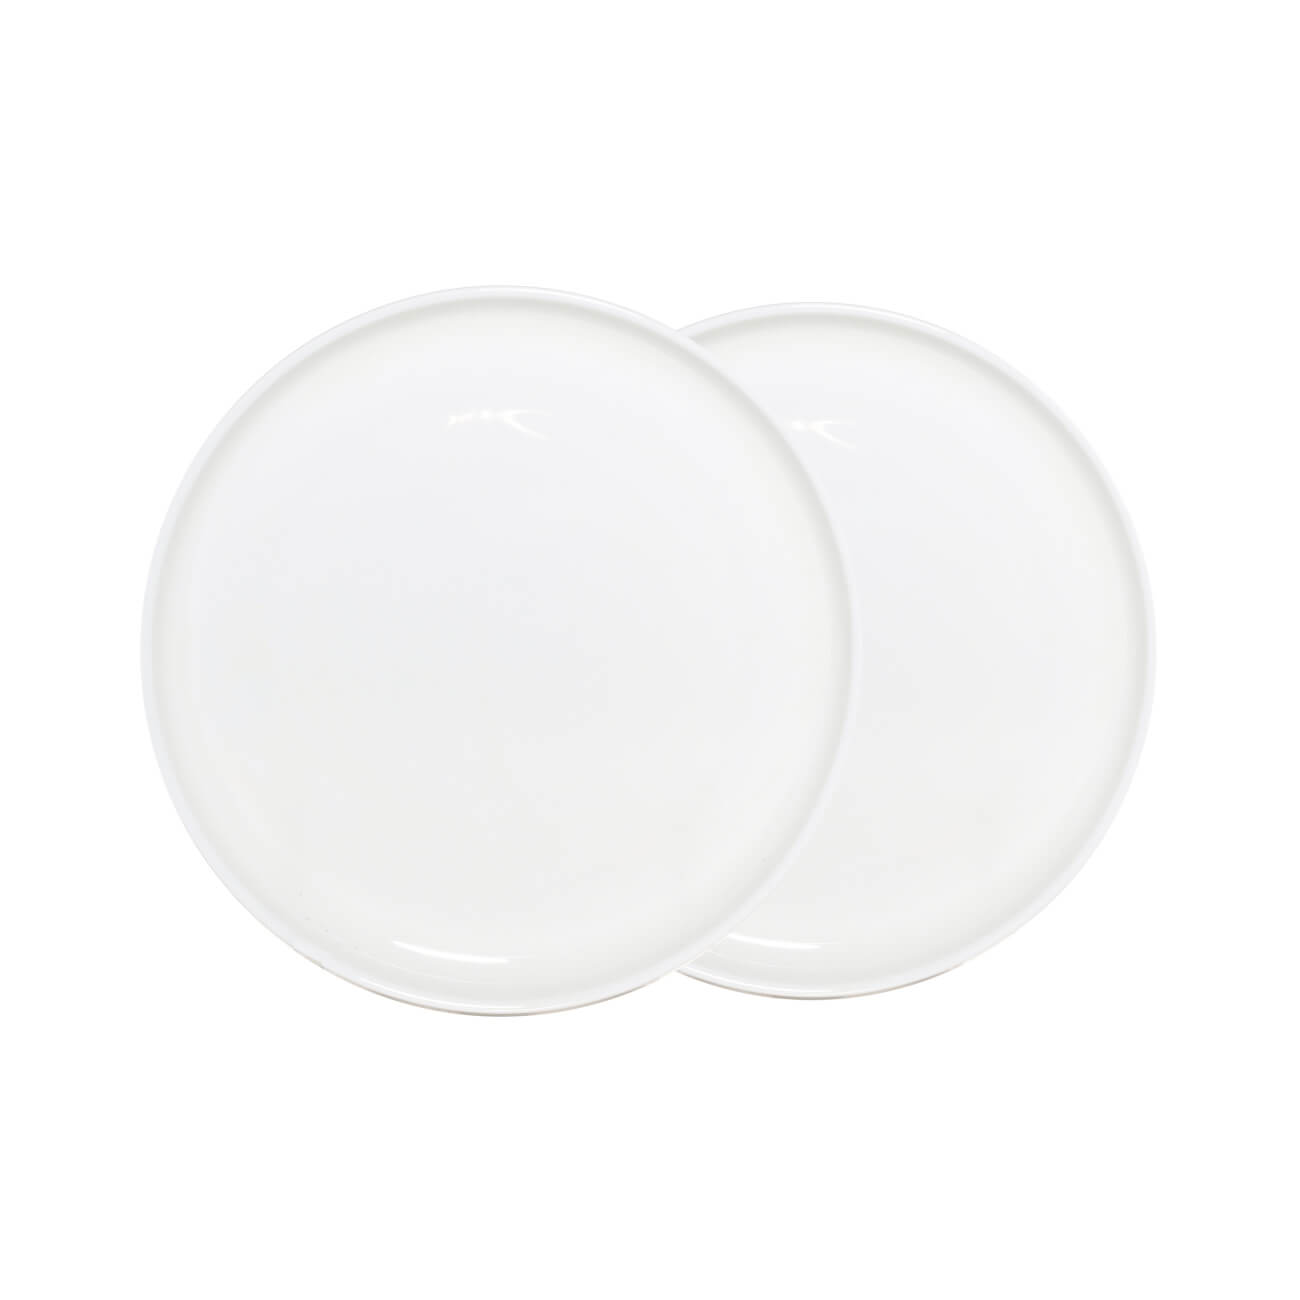 Тарелка десертная, 20 см, 2 шт, фарфор F, белая, Ideal white тарелка десертная стеклокерамика 19 см квадратная carine white luminarc h3660 l4454 n6803 белая